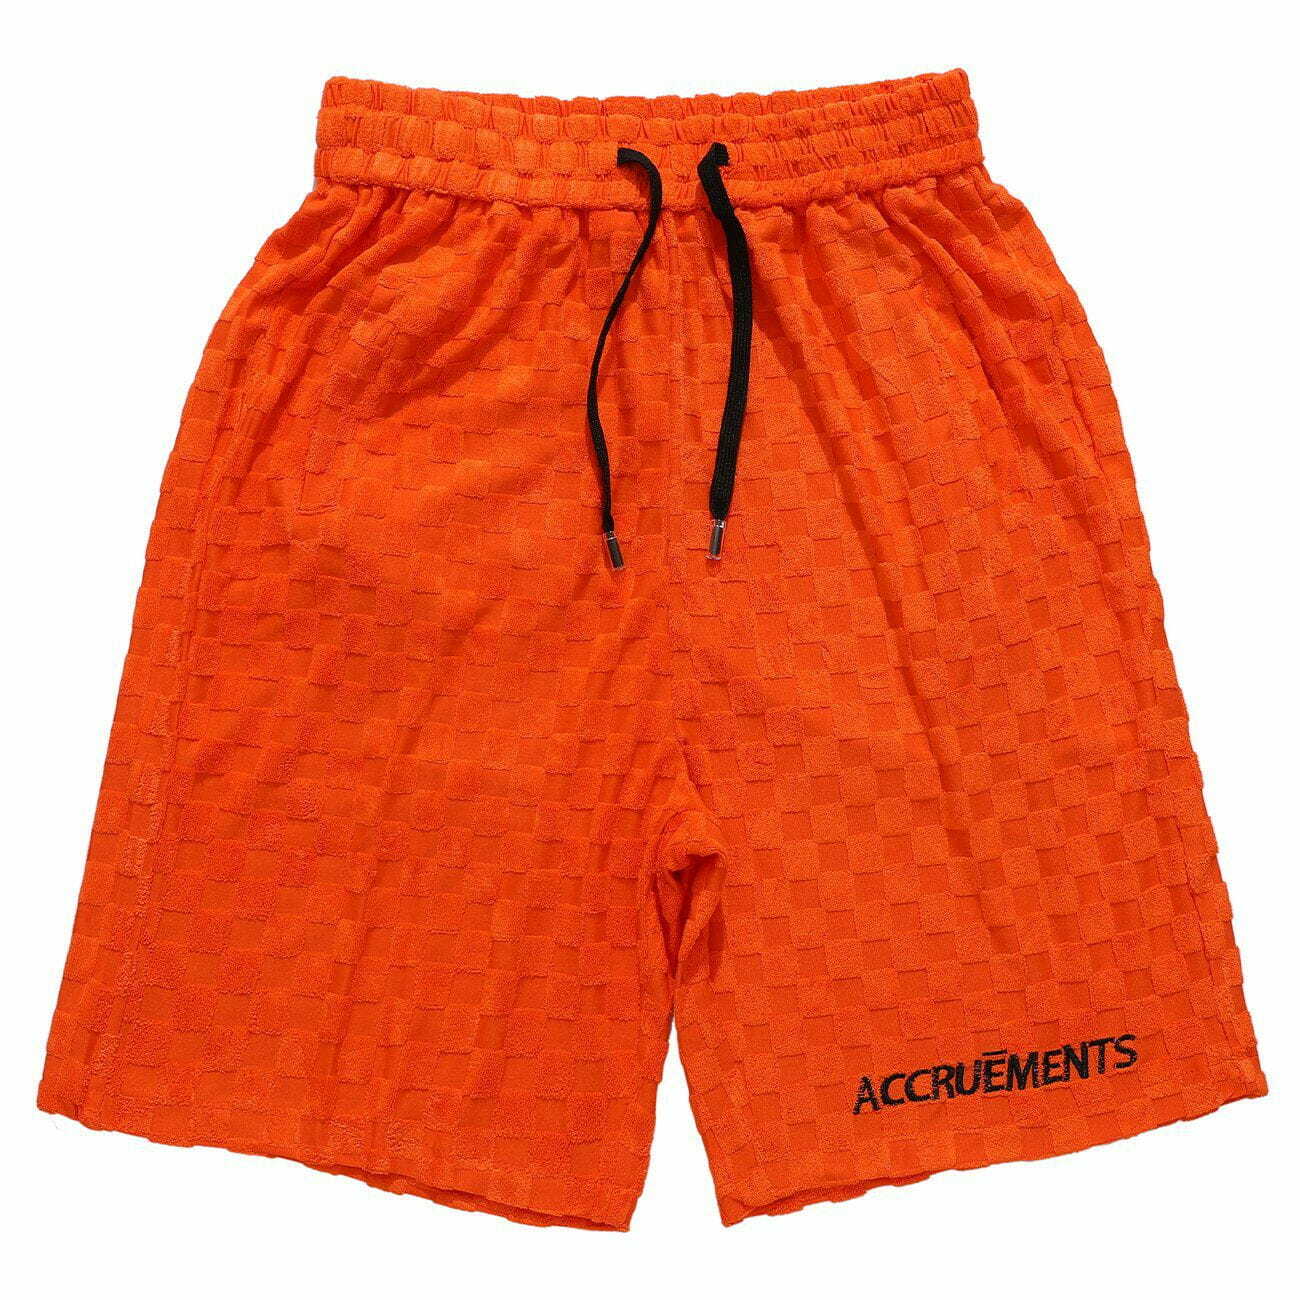 checkered drawstring shorts edgy & comfortable streetwear 7771